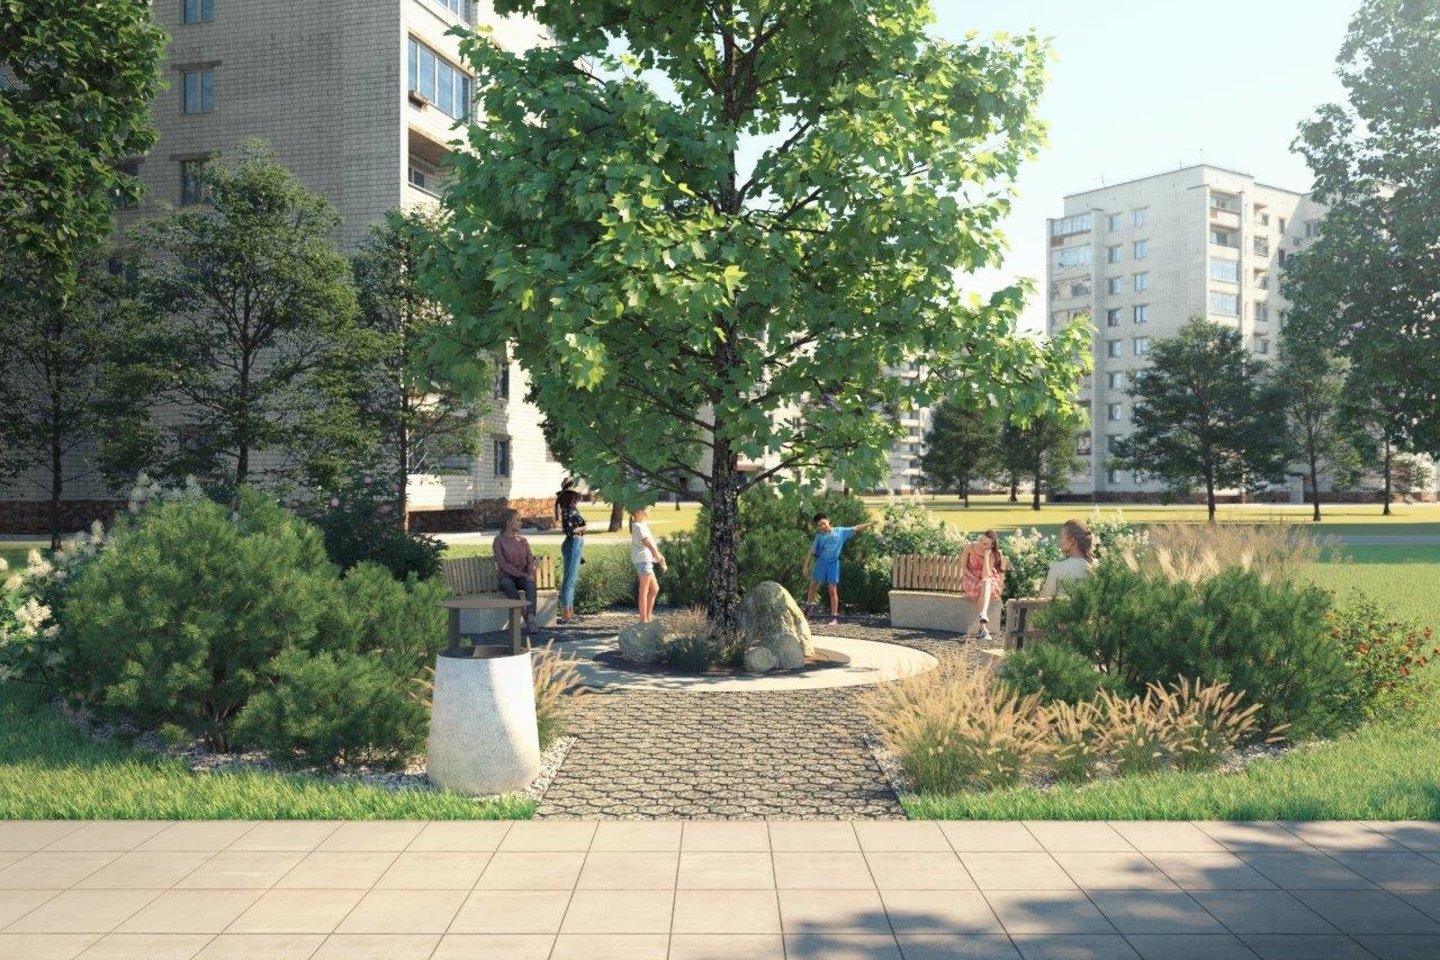 Rangovai jau ruošiasi įrengti pirmuosius iš 100 skverų, suplanuotų pagal Vilniaus miesto savivaldybės projektą „Žaliosios salelės“.<br>Vilniaus savivaldybės vizual.